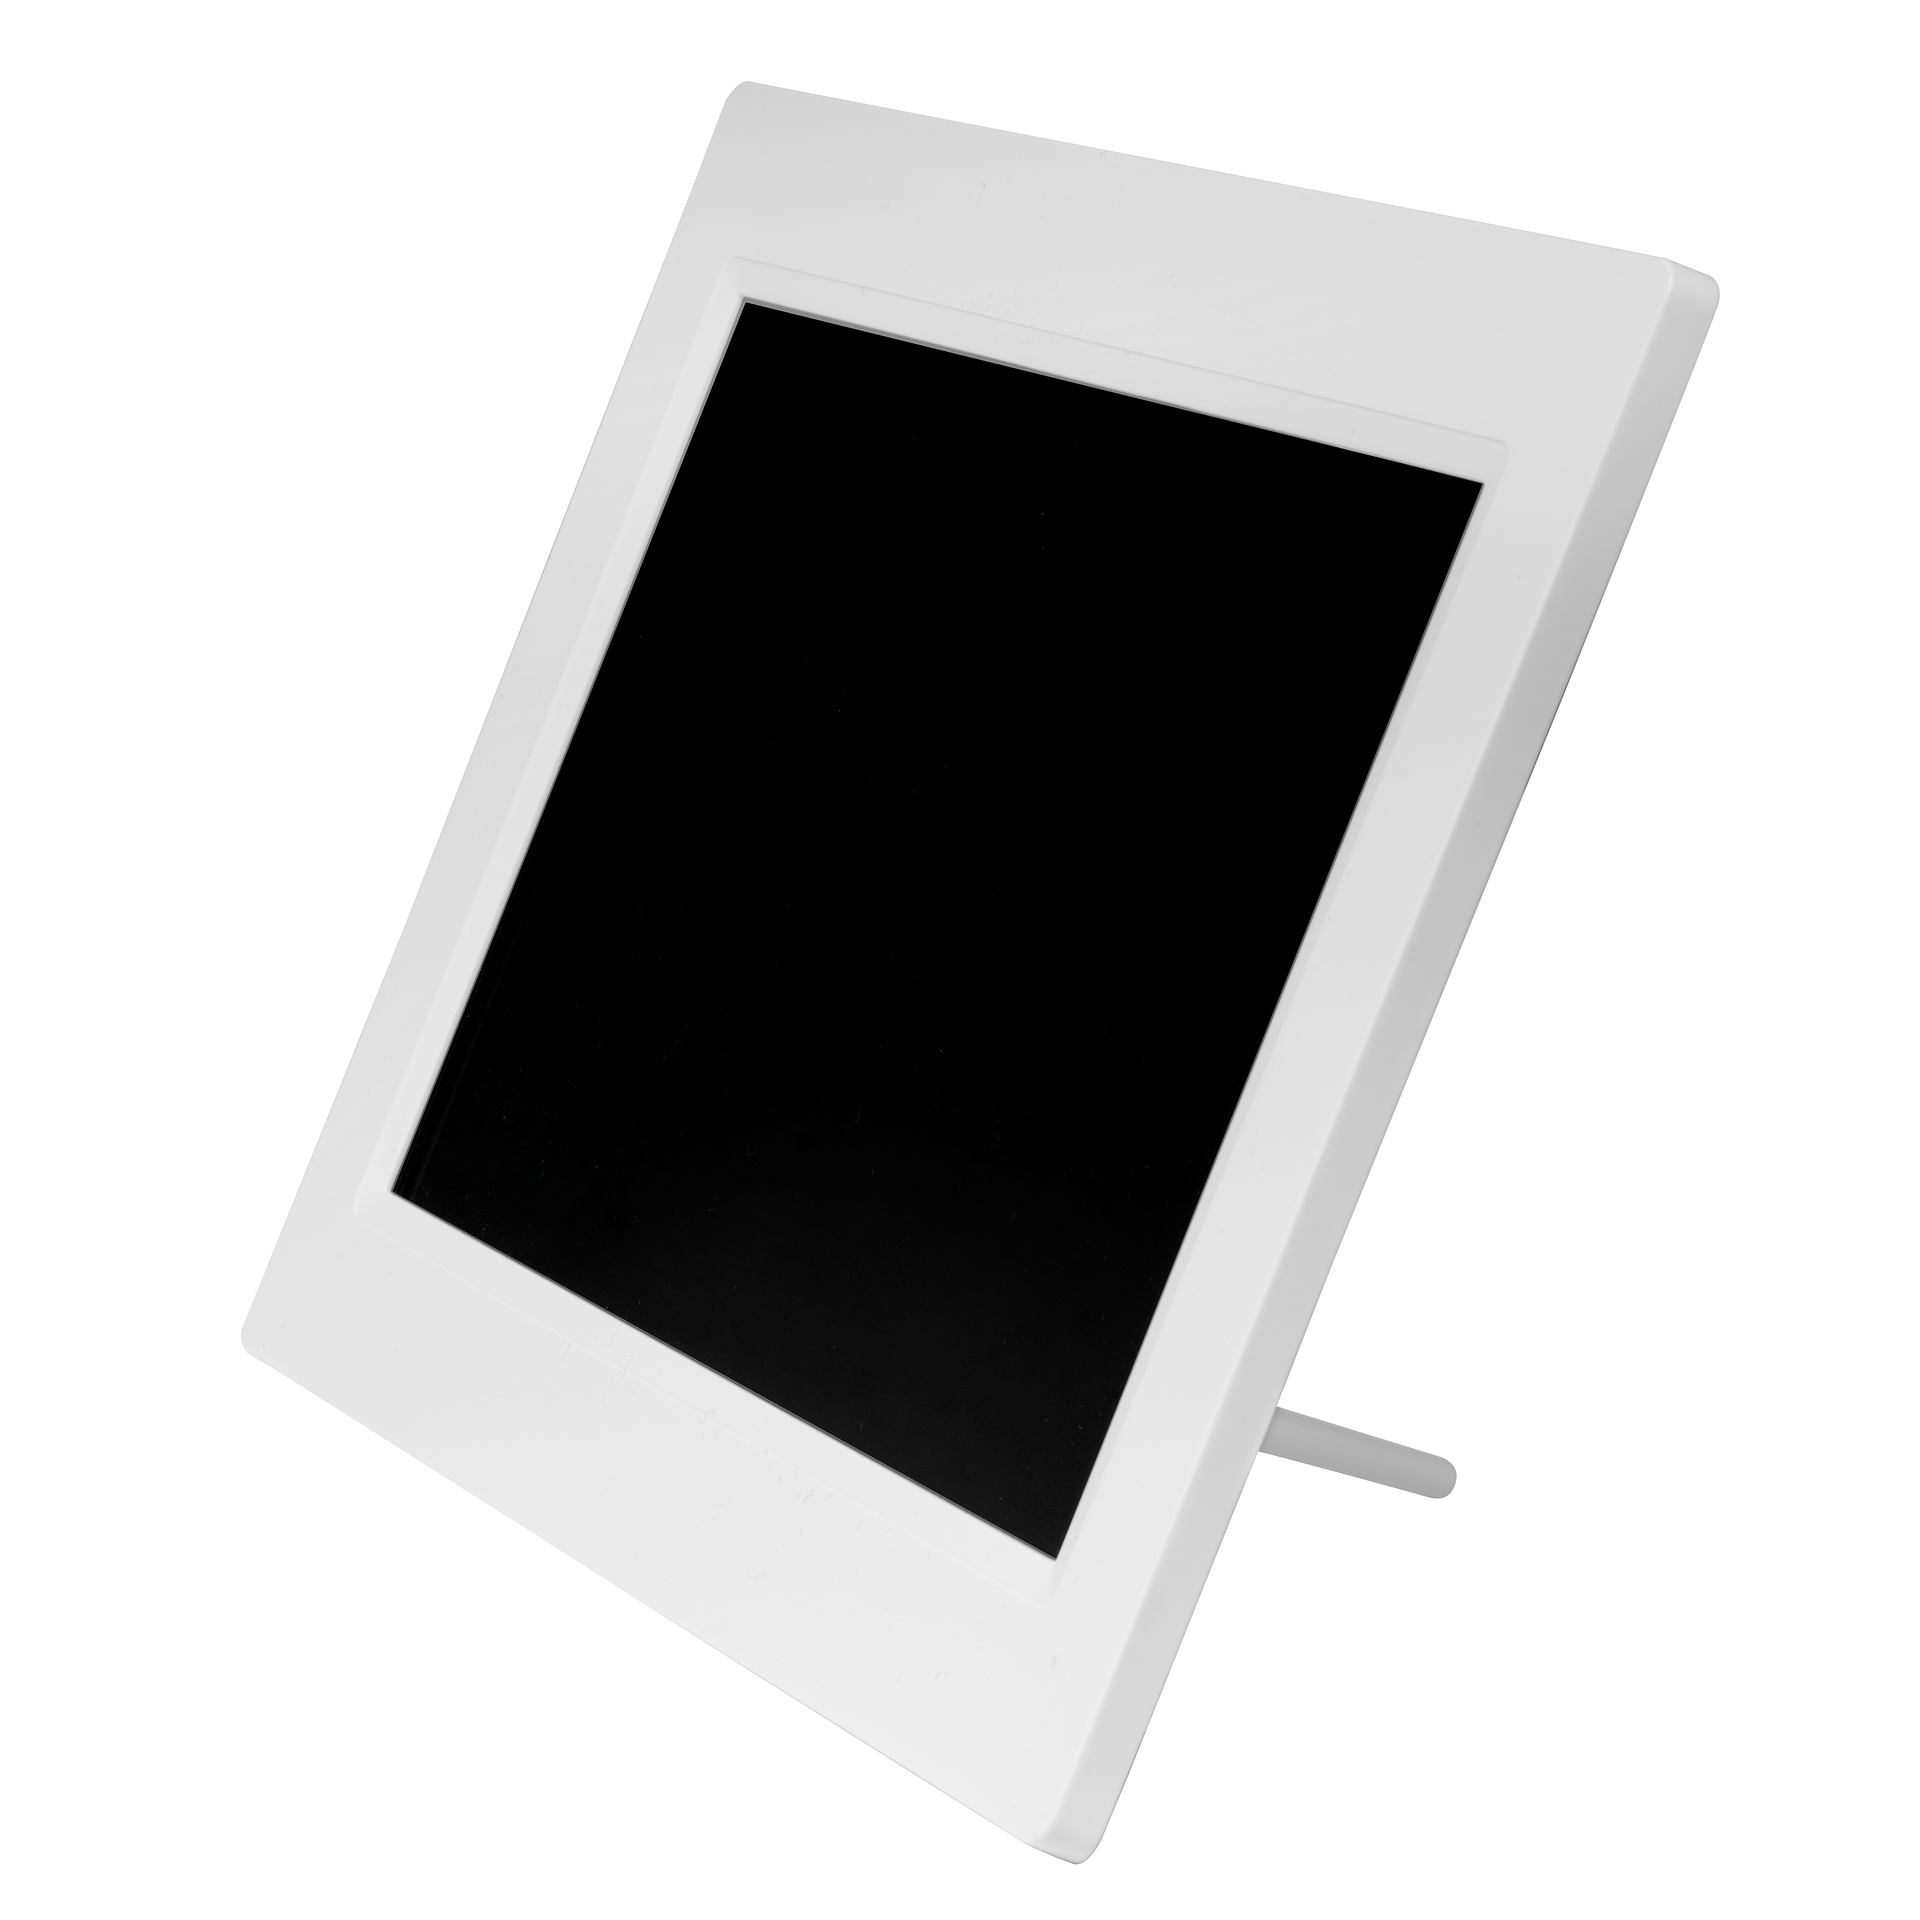 DENVER PFF-1015 Monitor, 25,65 cm, 1280 weiß x 800